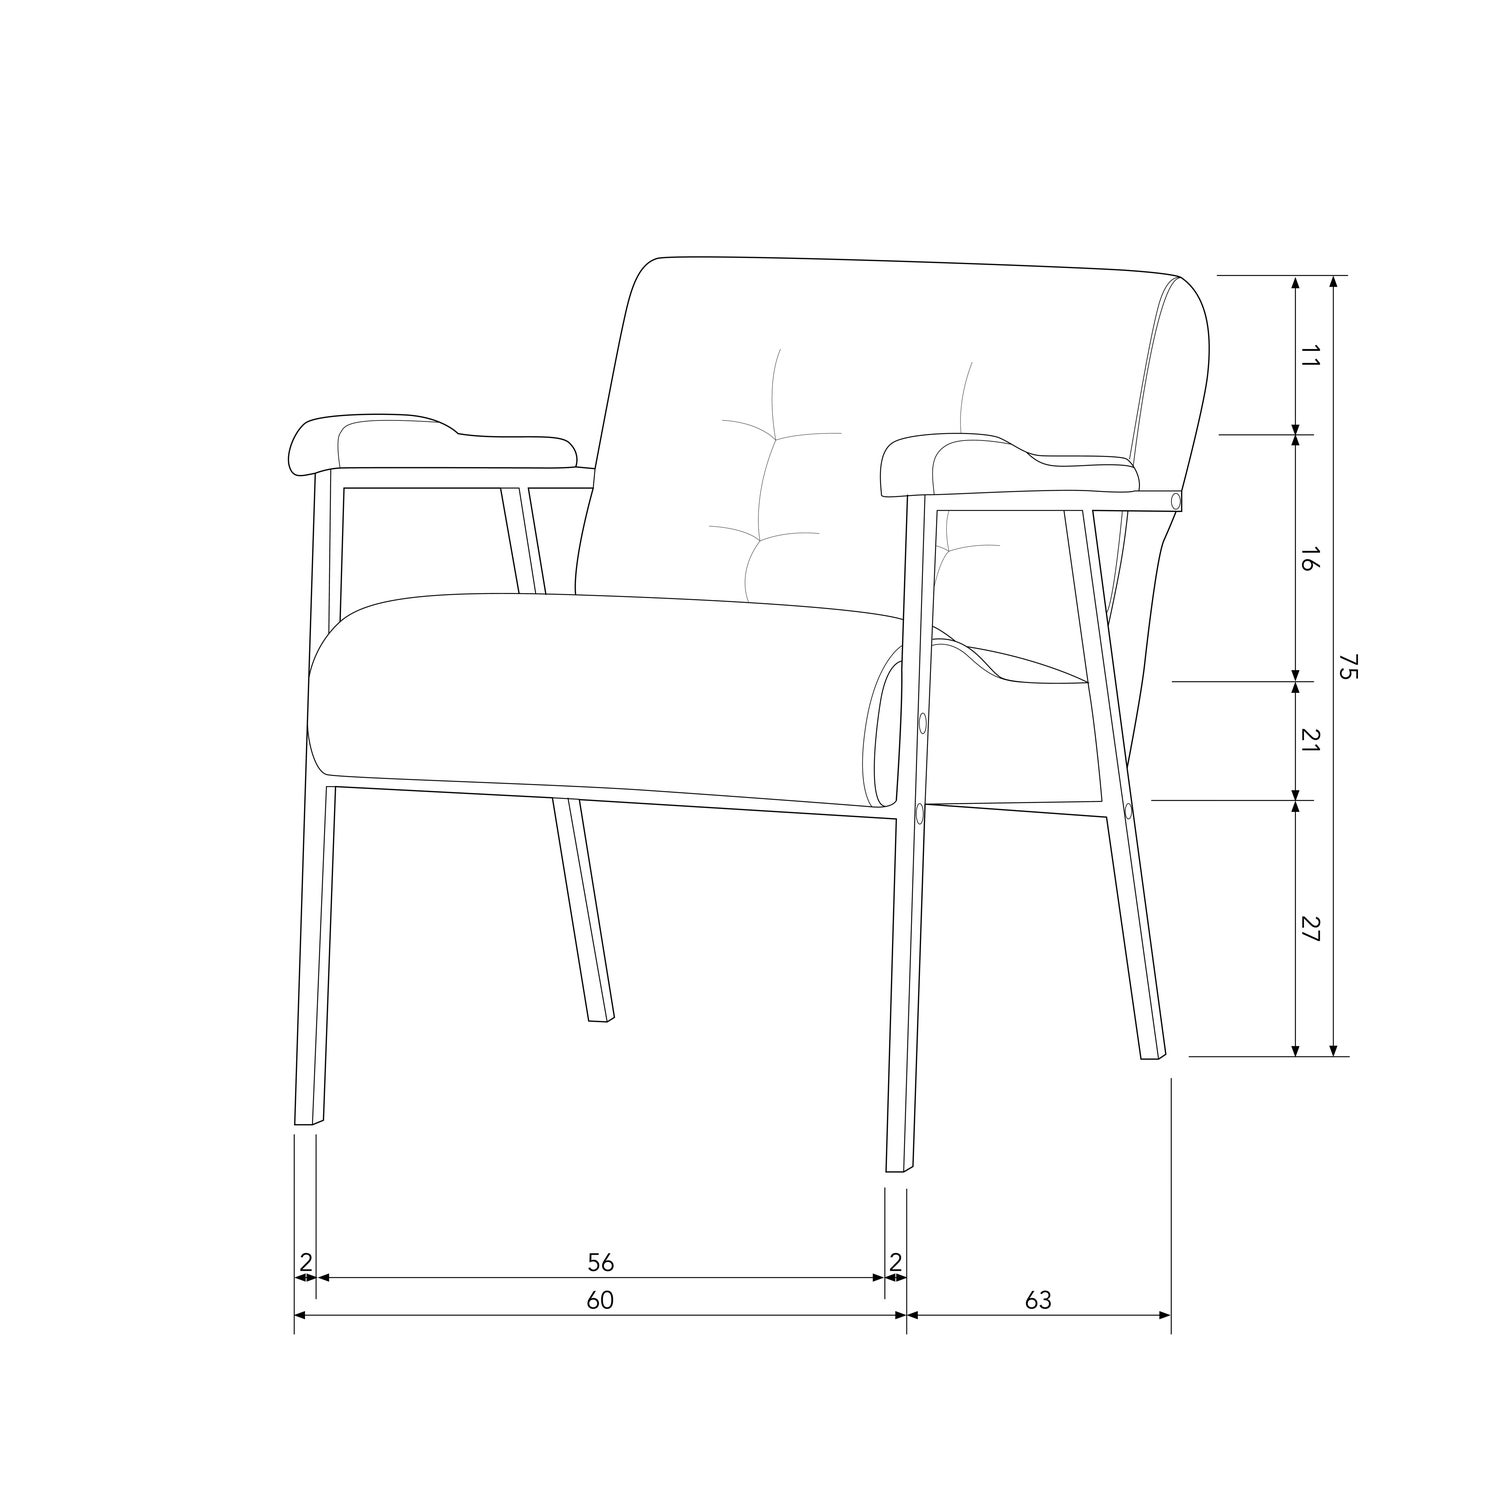 340477-G-50_BT_Scott_armchair.jpg?auto=webp&format=png&width=1500&height=1500